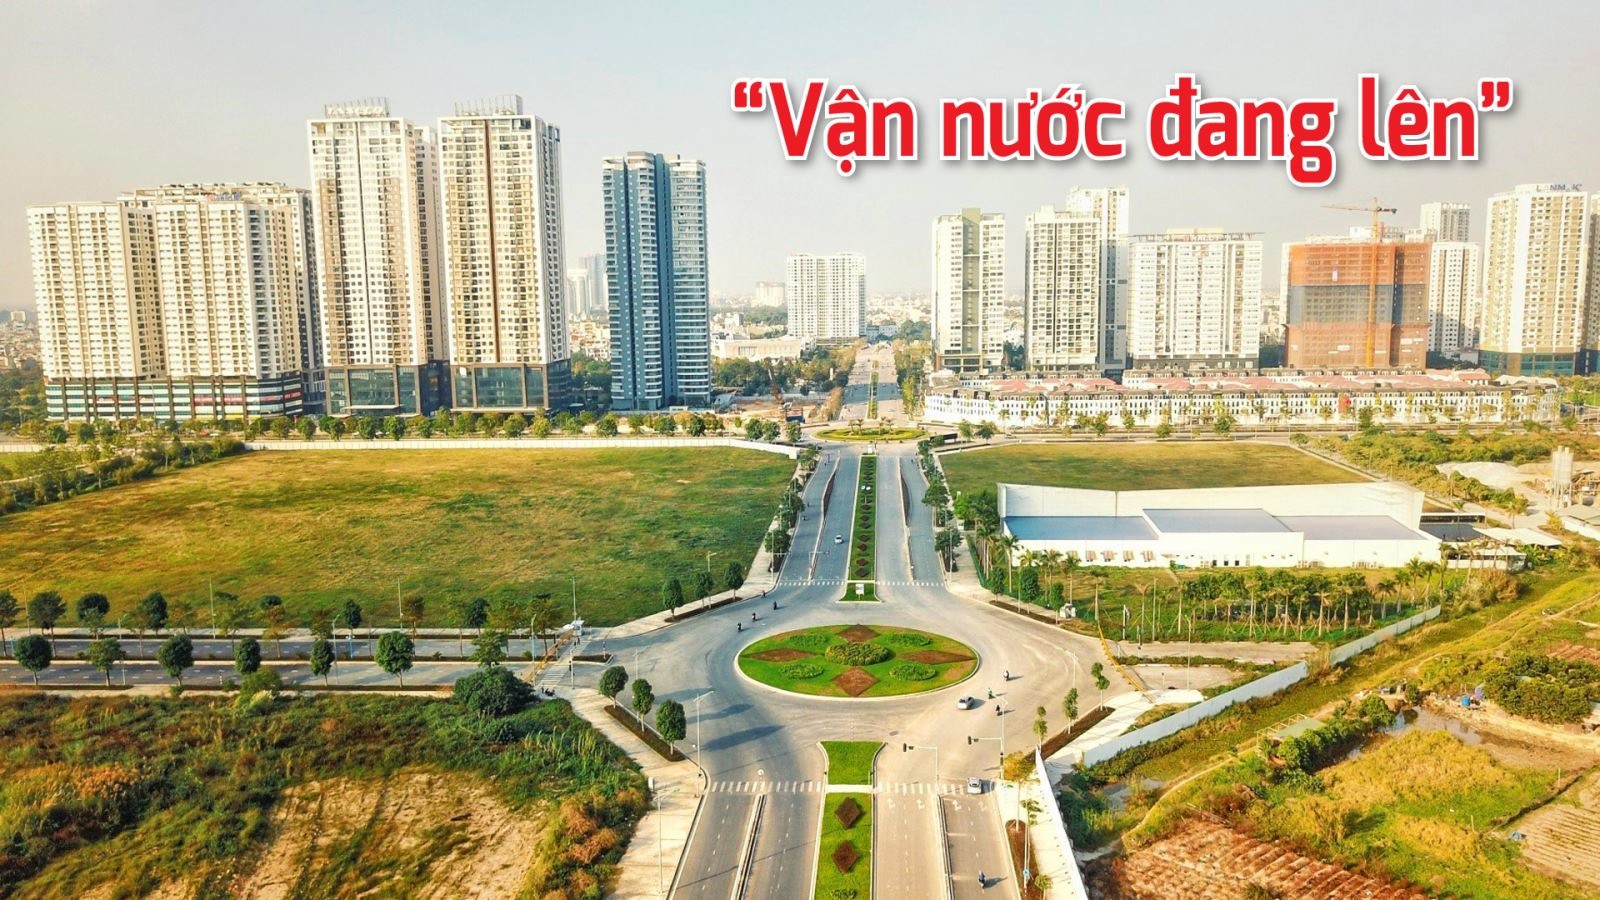 Đường Nguyễn Văn Huyên kéo dài với 8 làn xe kết nối 3 quận nội thành Hà Nội giúp người dân phía tây Thủ đô đi lại thuận tiện hơn.